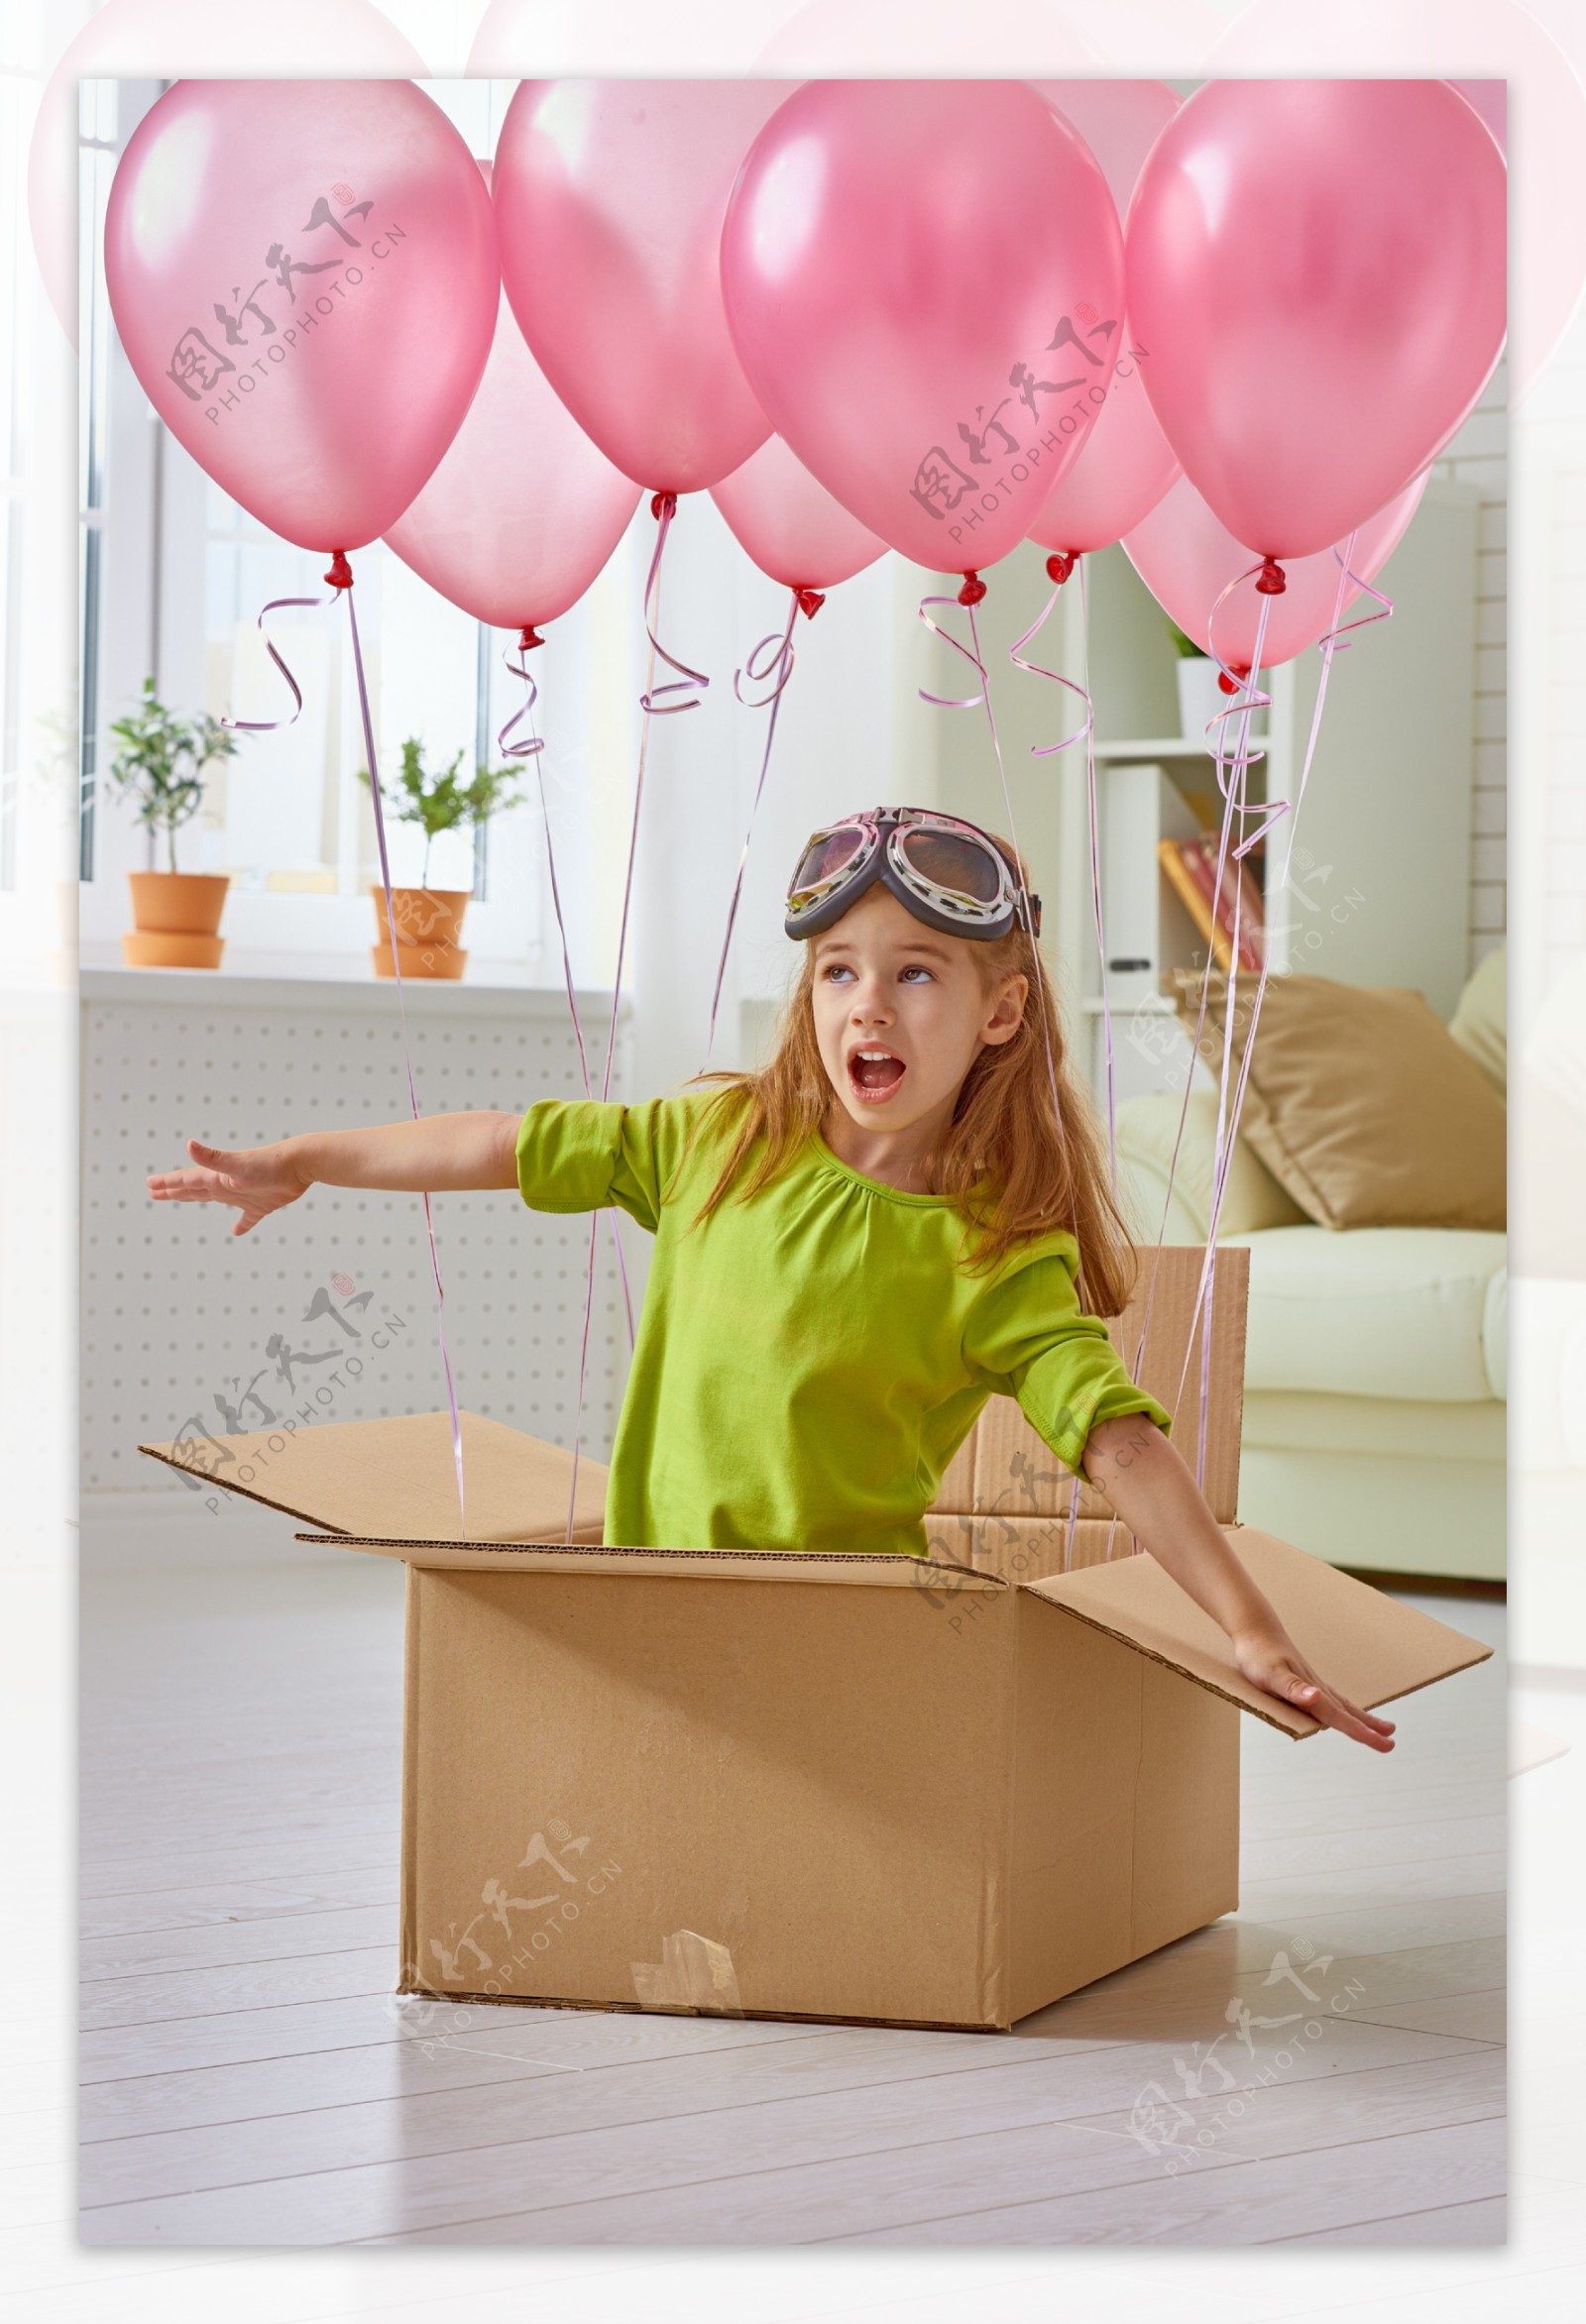 坐着气球飞翔的小女孩图片